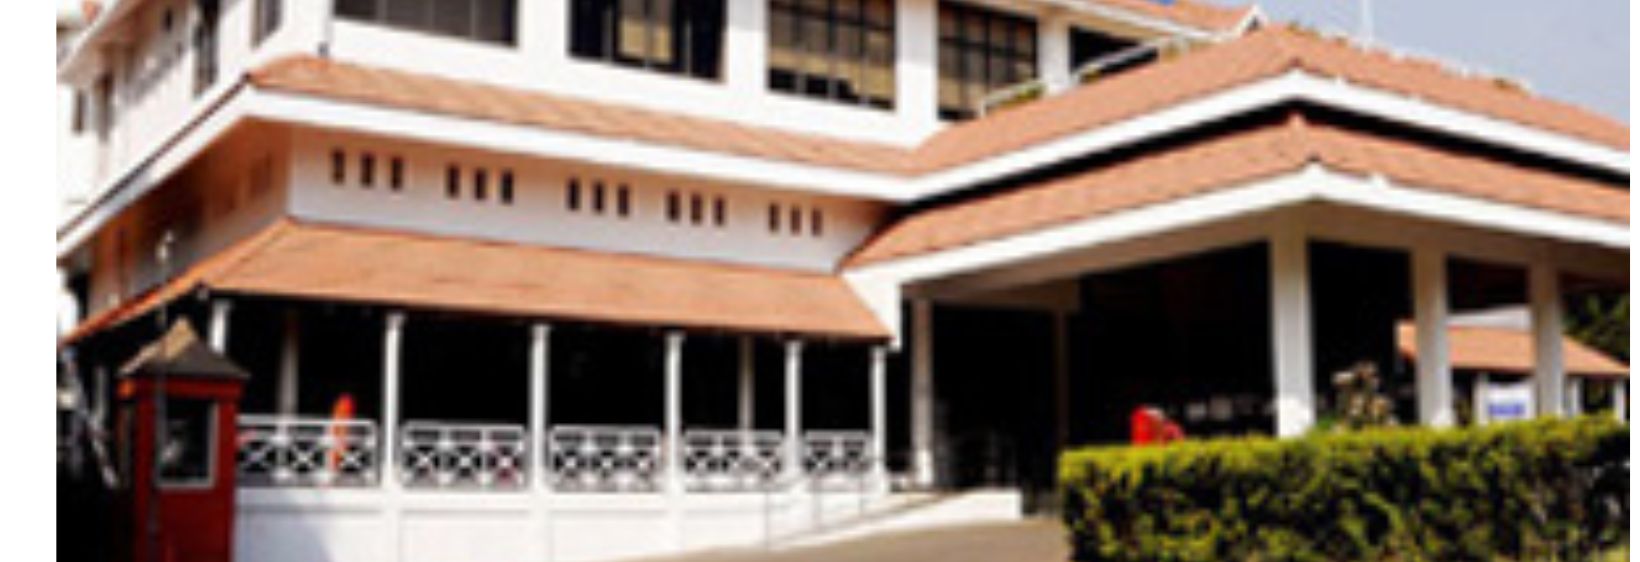 Narayana Hrudayalaya College of Nursing - Bangalore